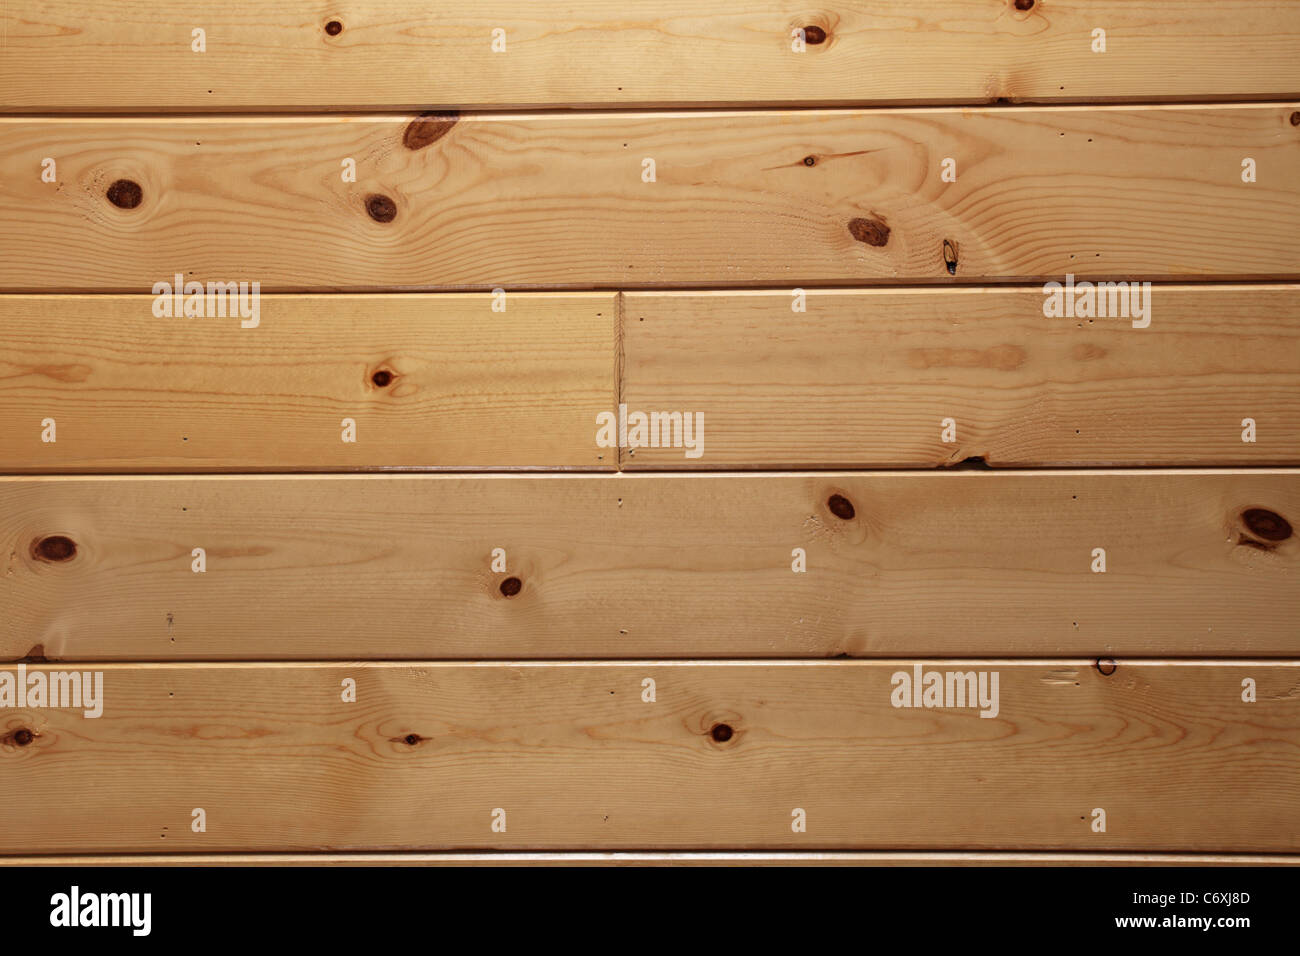 La planche en bois vernis lambris noueux texture de fond Banque D'Images